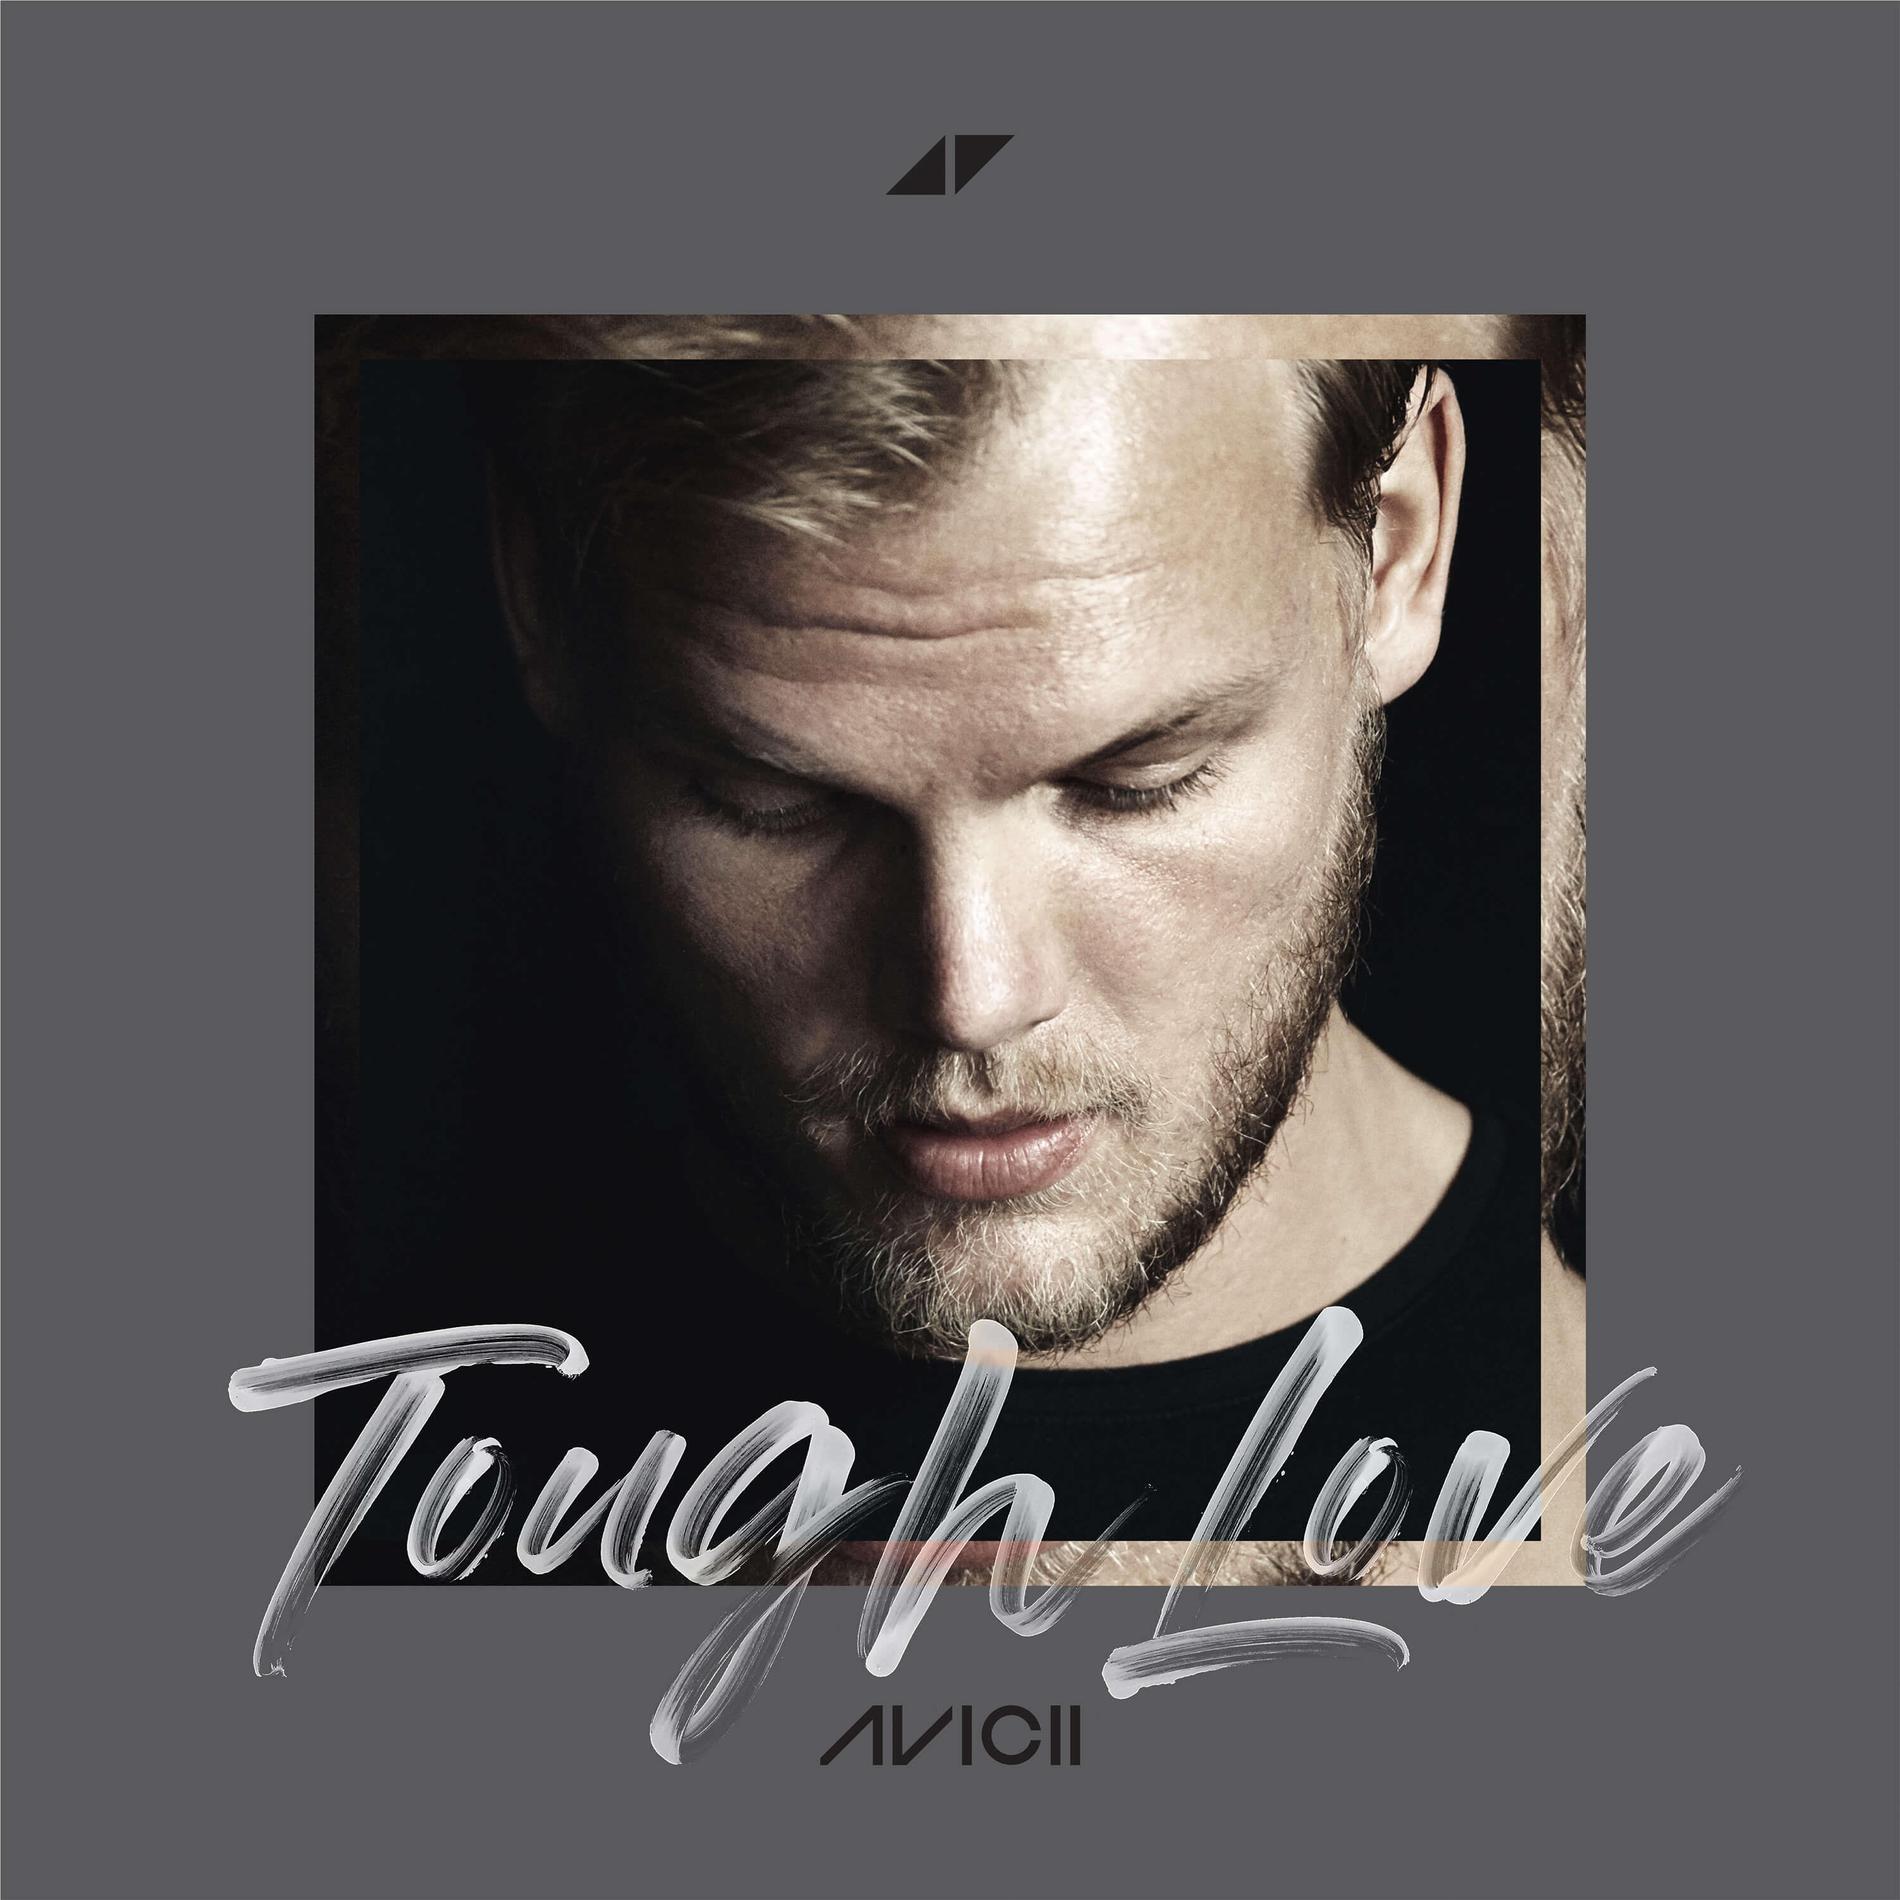 Aviciis nya singel ”Tough love”